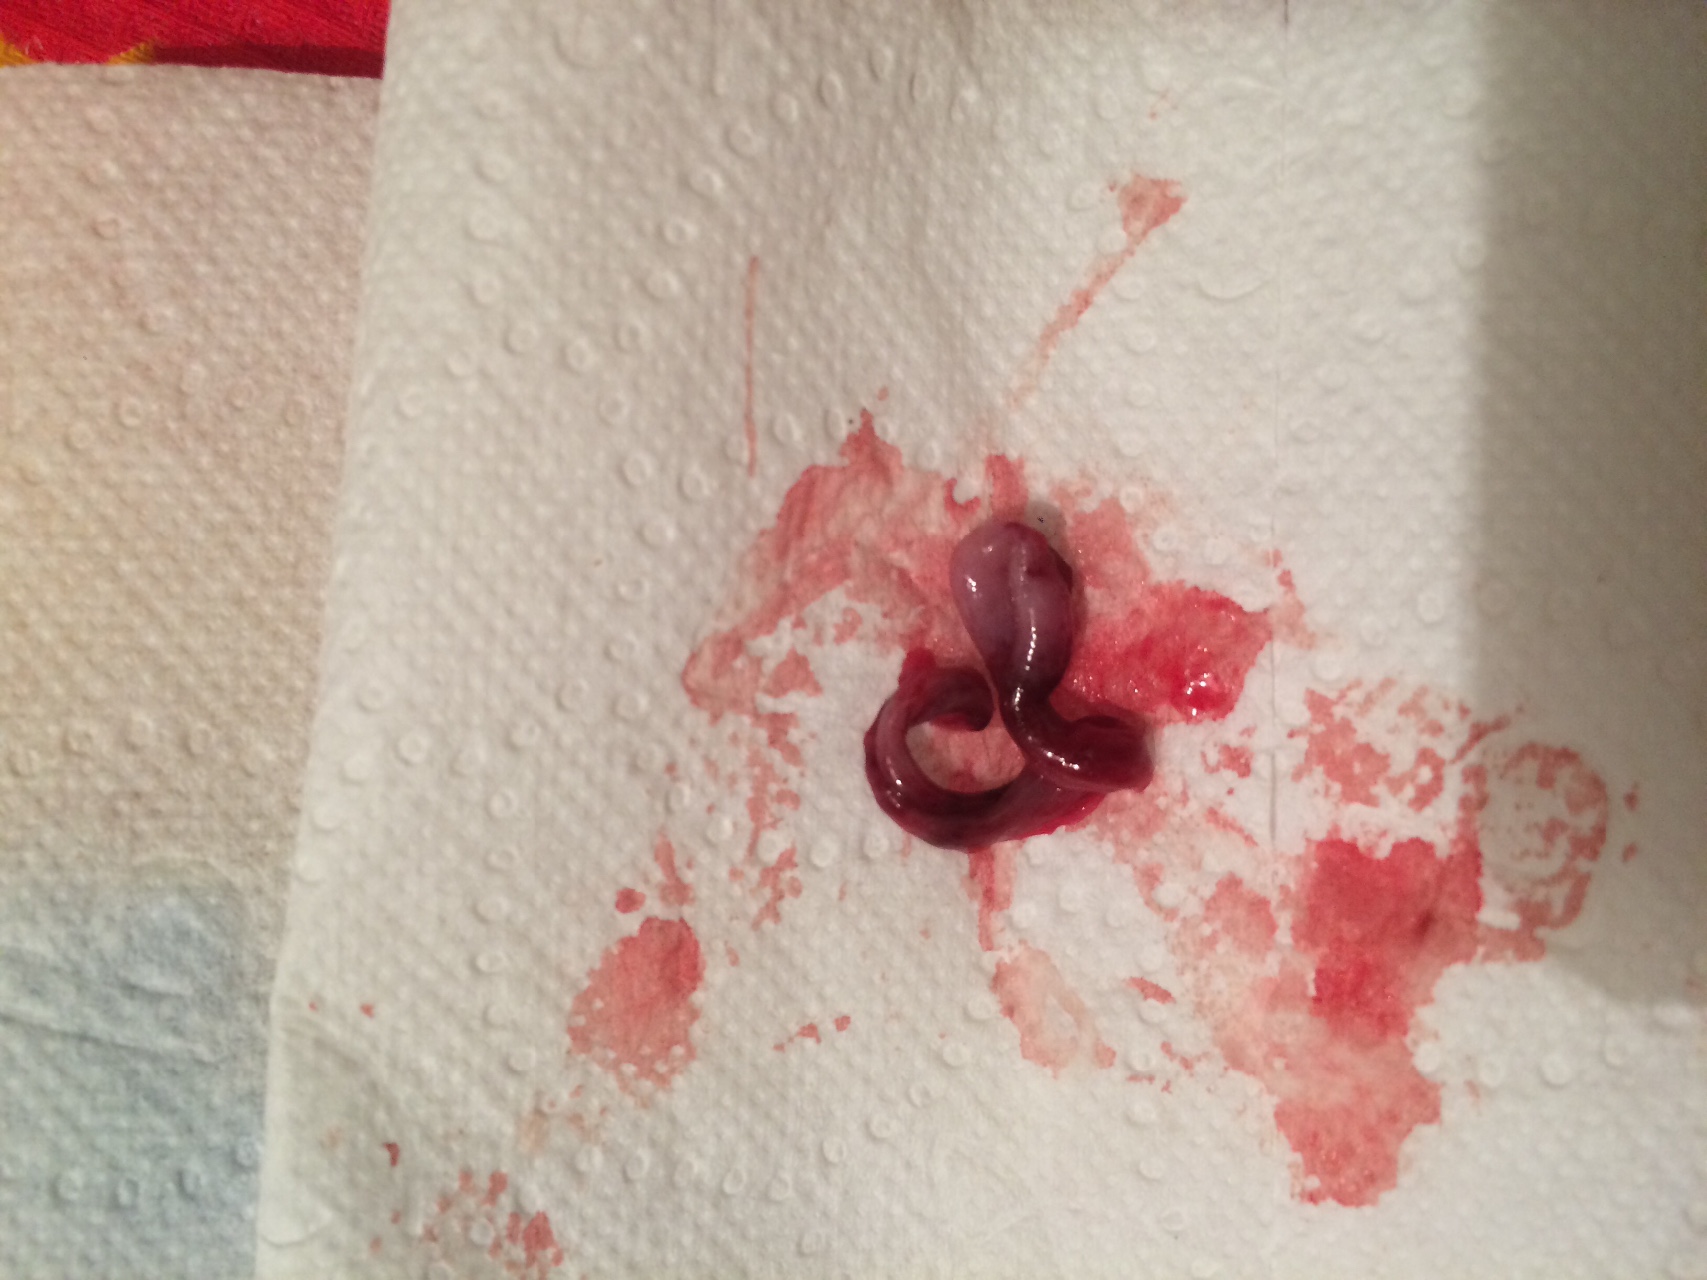 сгустки крови в сперме мужчин фото 77